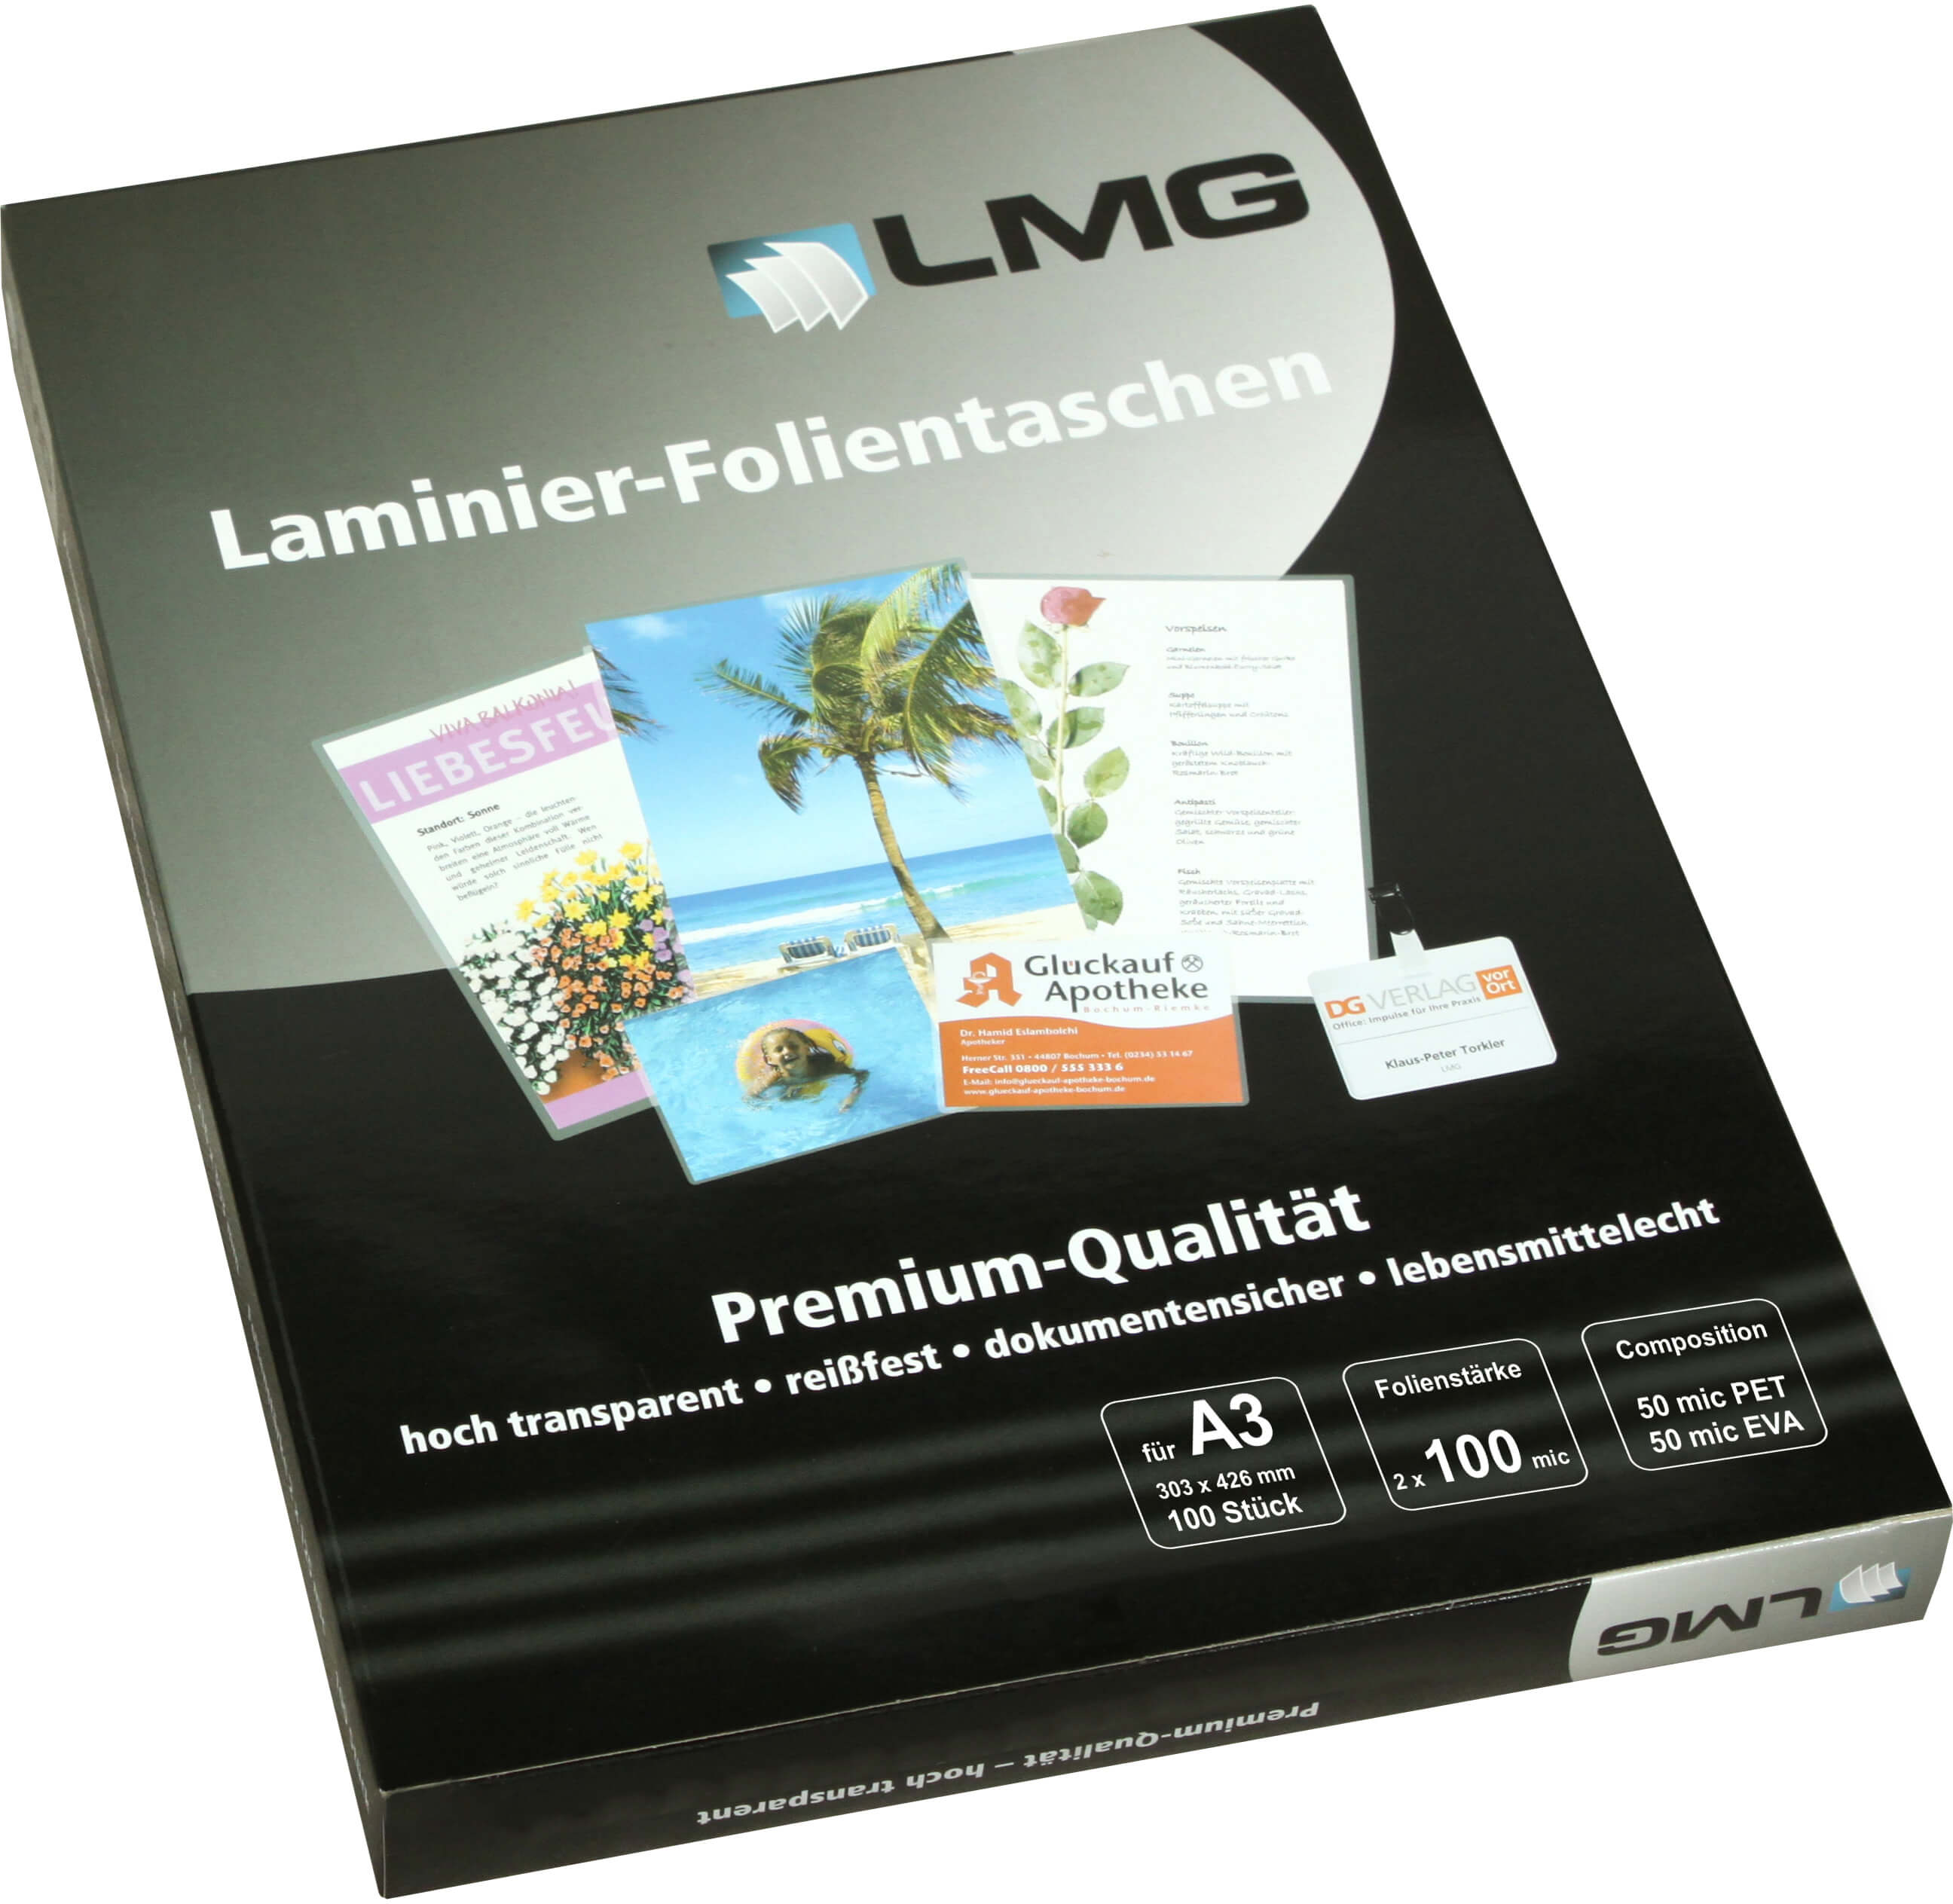 Laminierfolien A3 (303 x 426 mm), 2 x 100 mic, glänzend | Bestnr. LMGA3-100